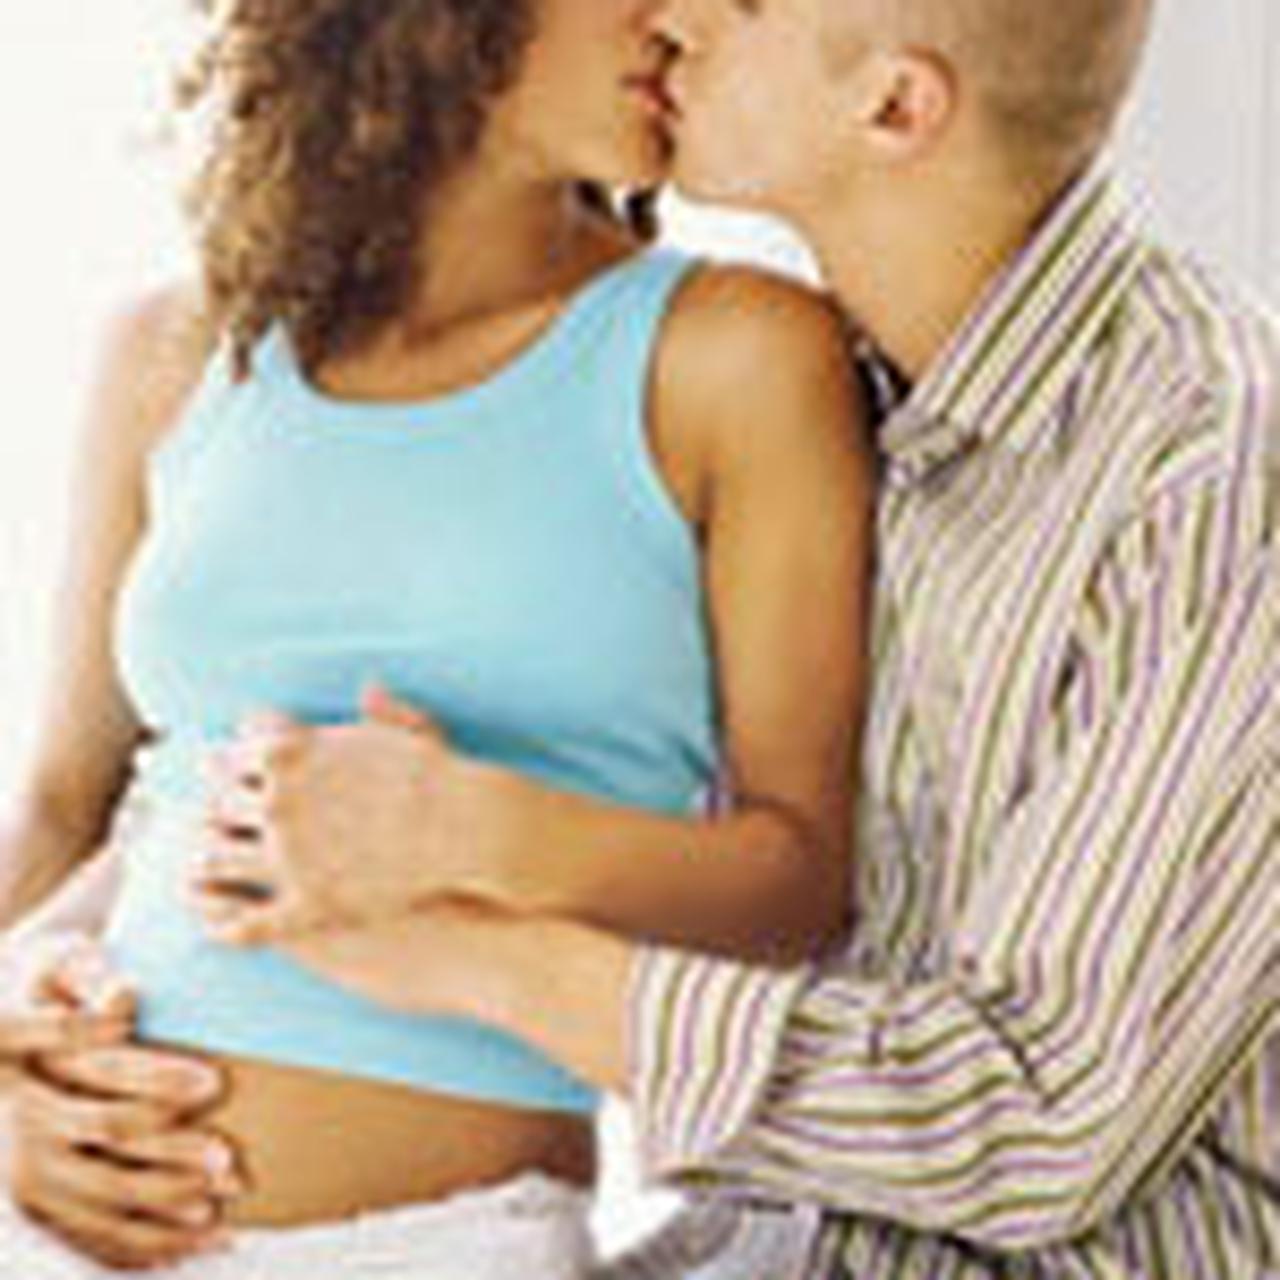 Секс во время беременности - Страсти